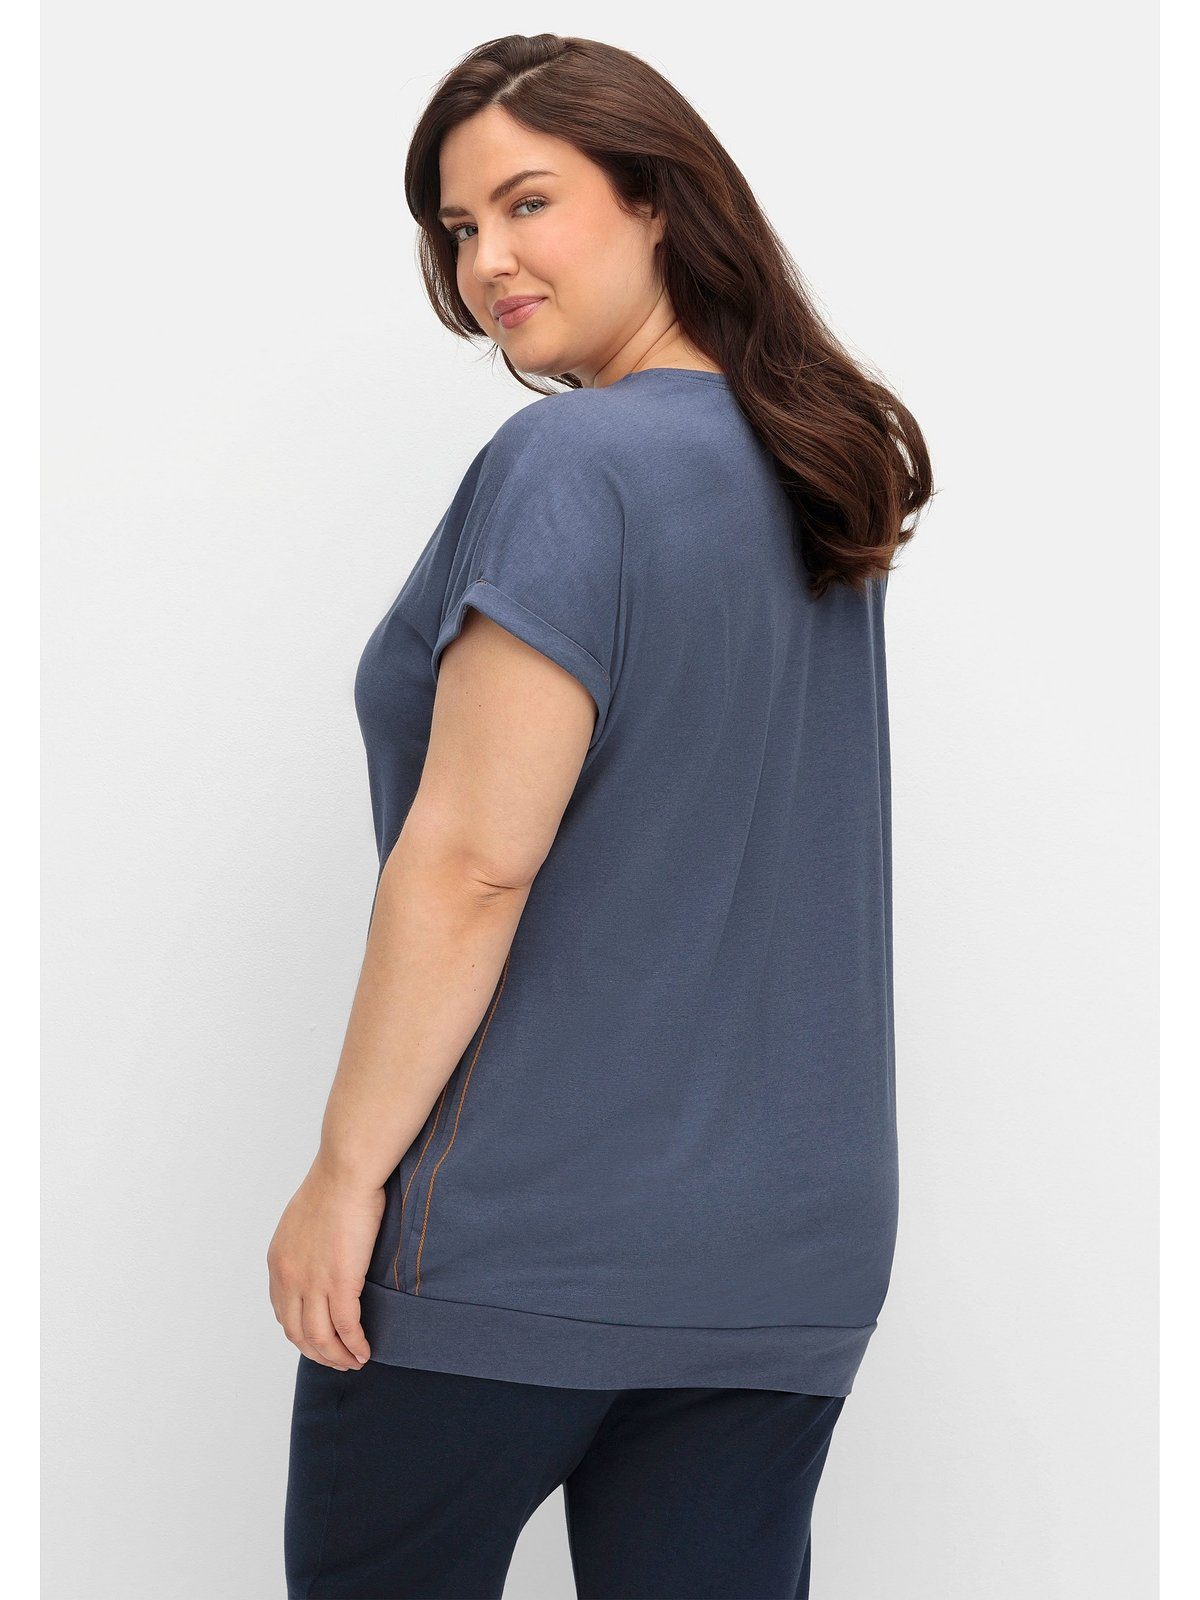 Sheego T-Shirt Große Größen mit elastischem Saumbund, Seitliche Ziernähte,  überschnittene Schultern